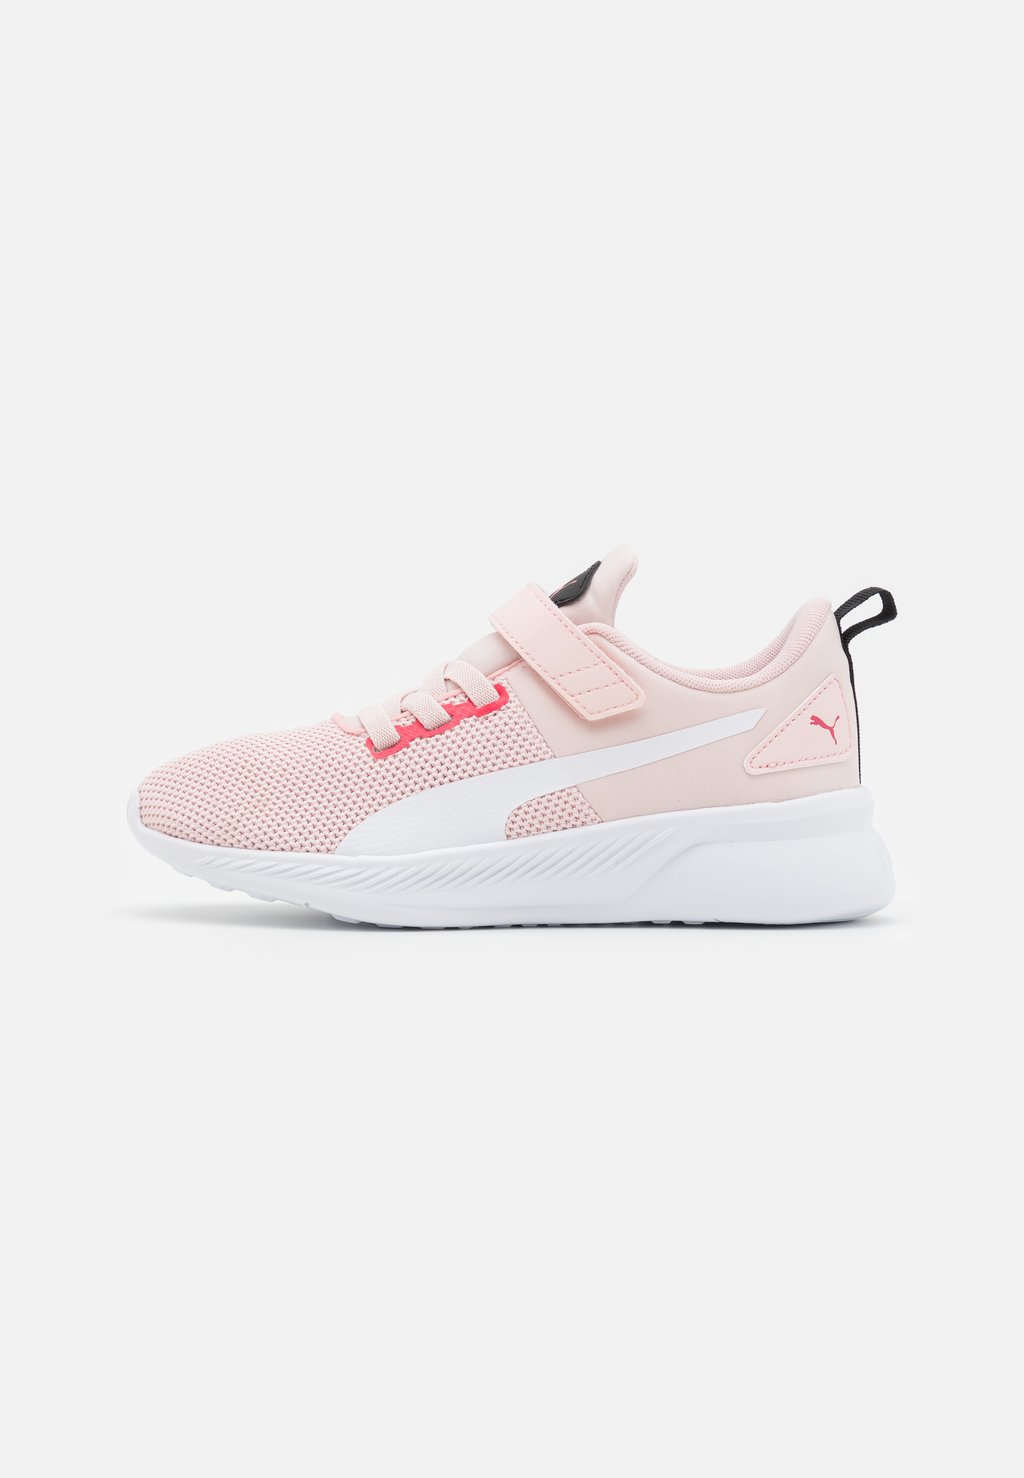 Нейтральные кроссовки Flyer Runner Puma, цвет white/lotus/paradise pink цена и фото